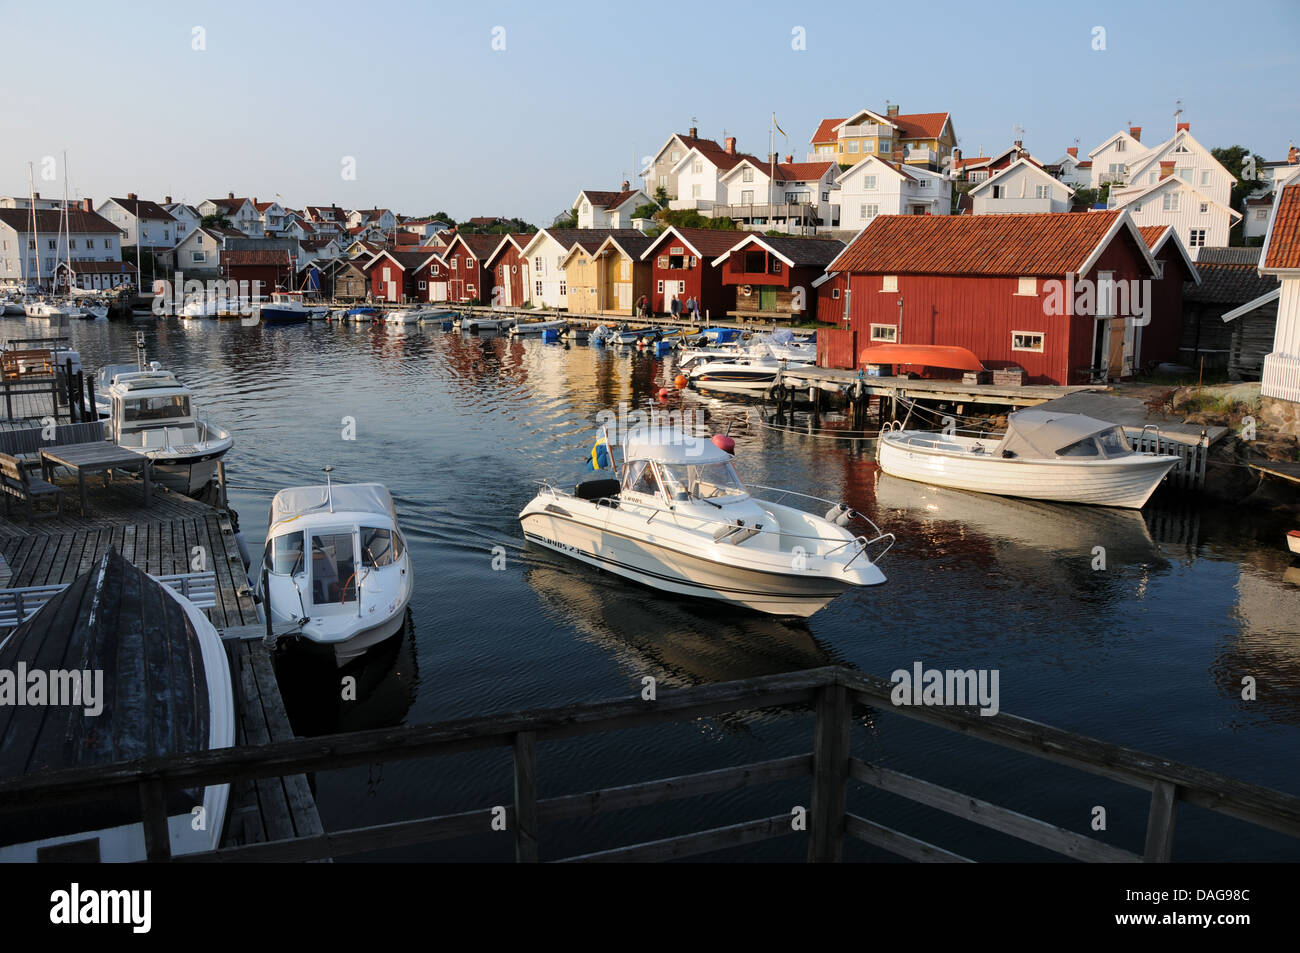 Village de pêcheurs de Grundsund sur la côte ouest de la Suède, avec des bateaux, les quais de bois et les hangars à bateaux Banque D'Images